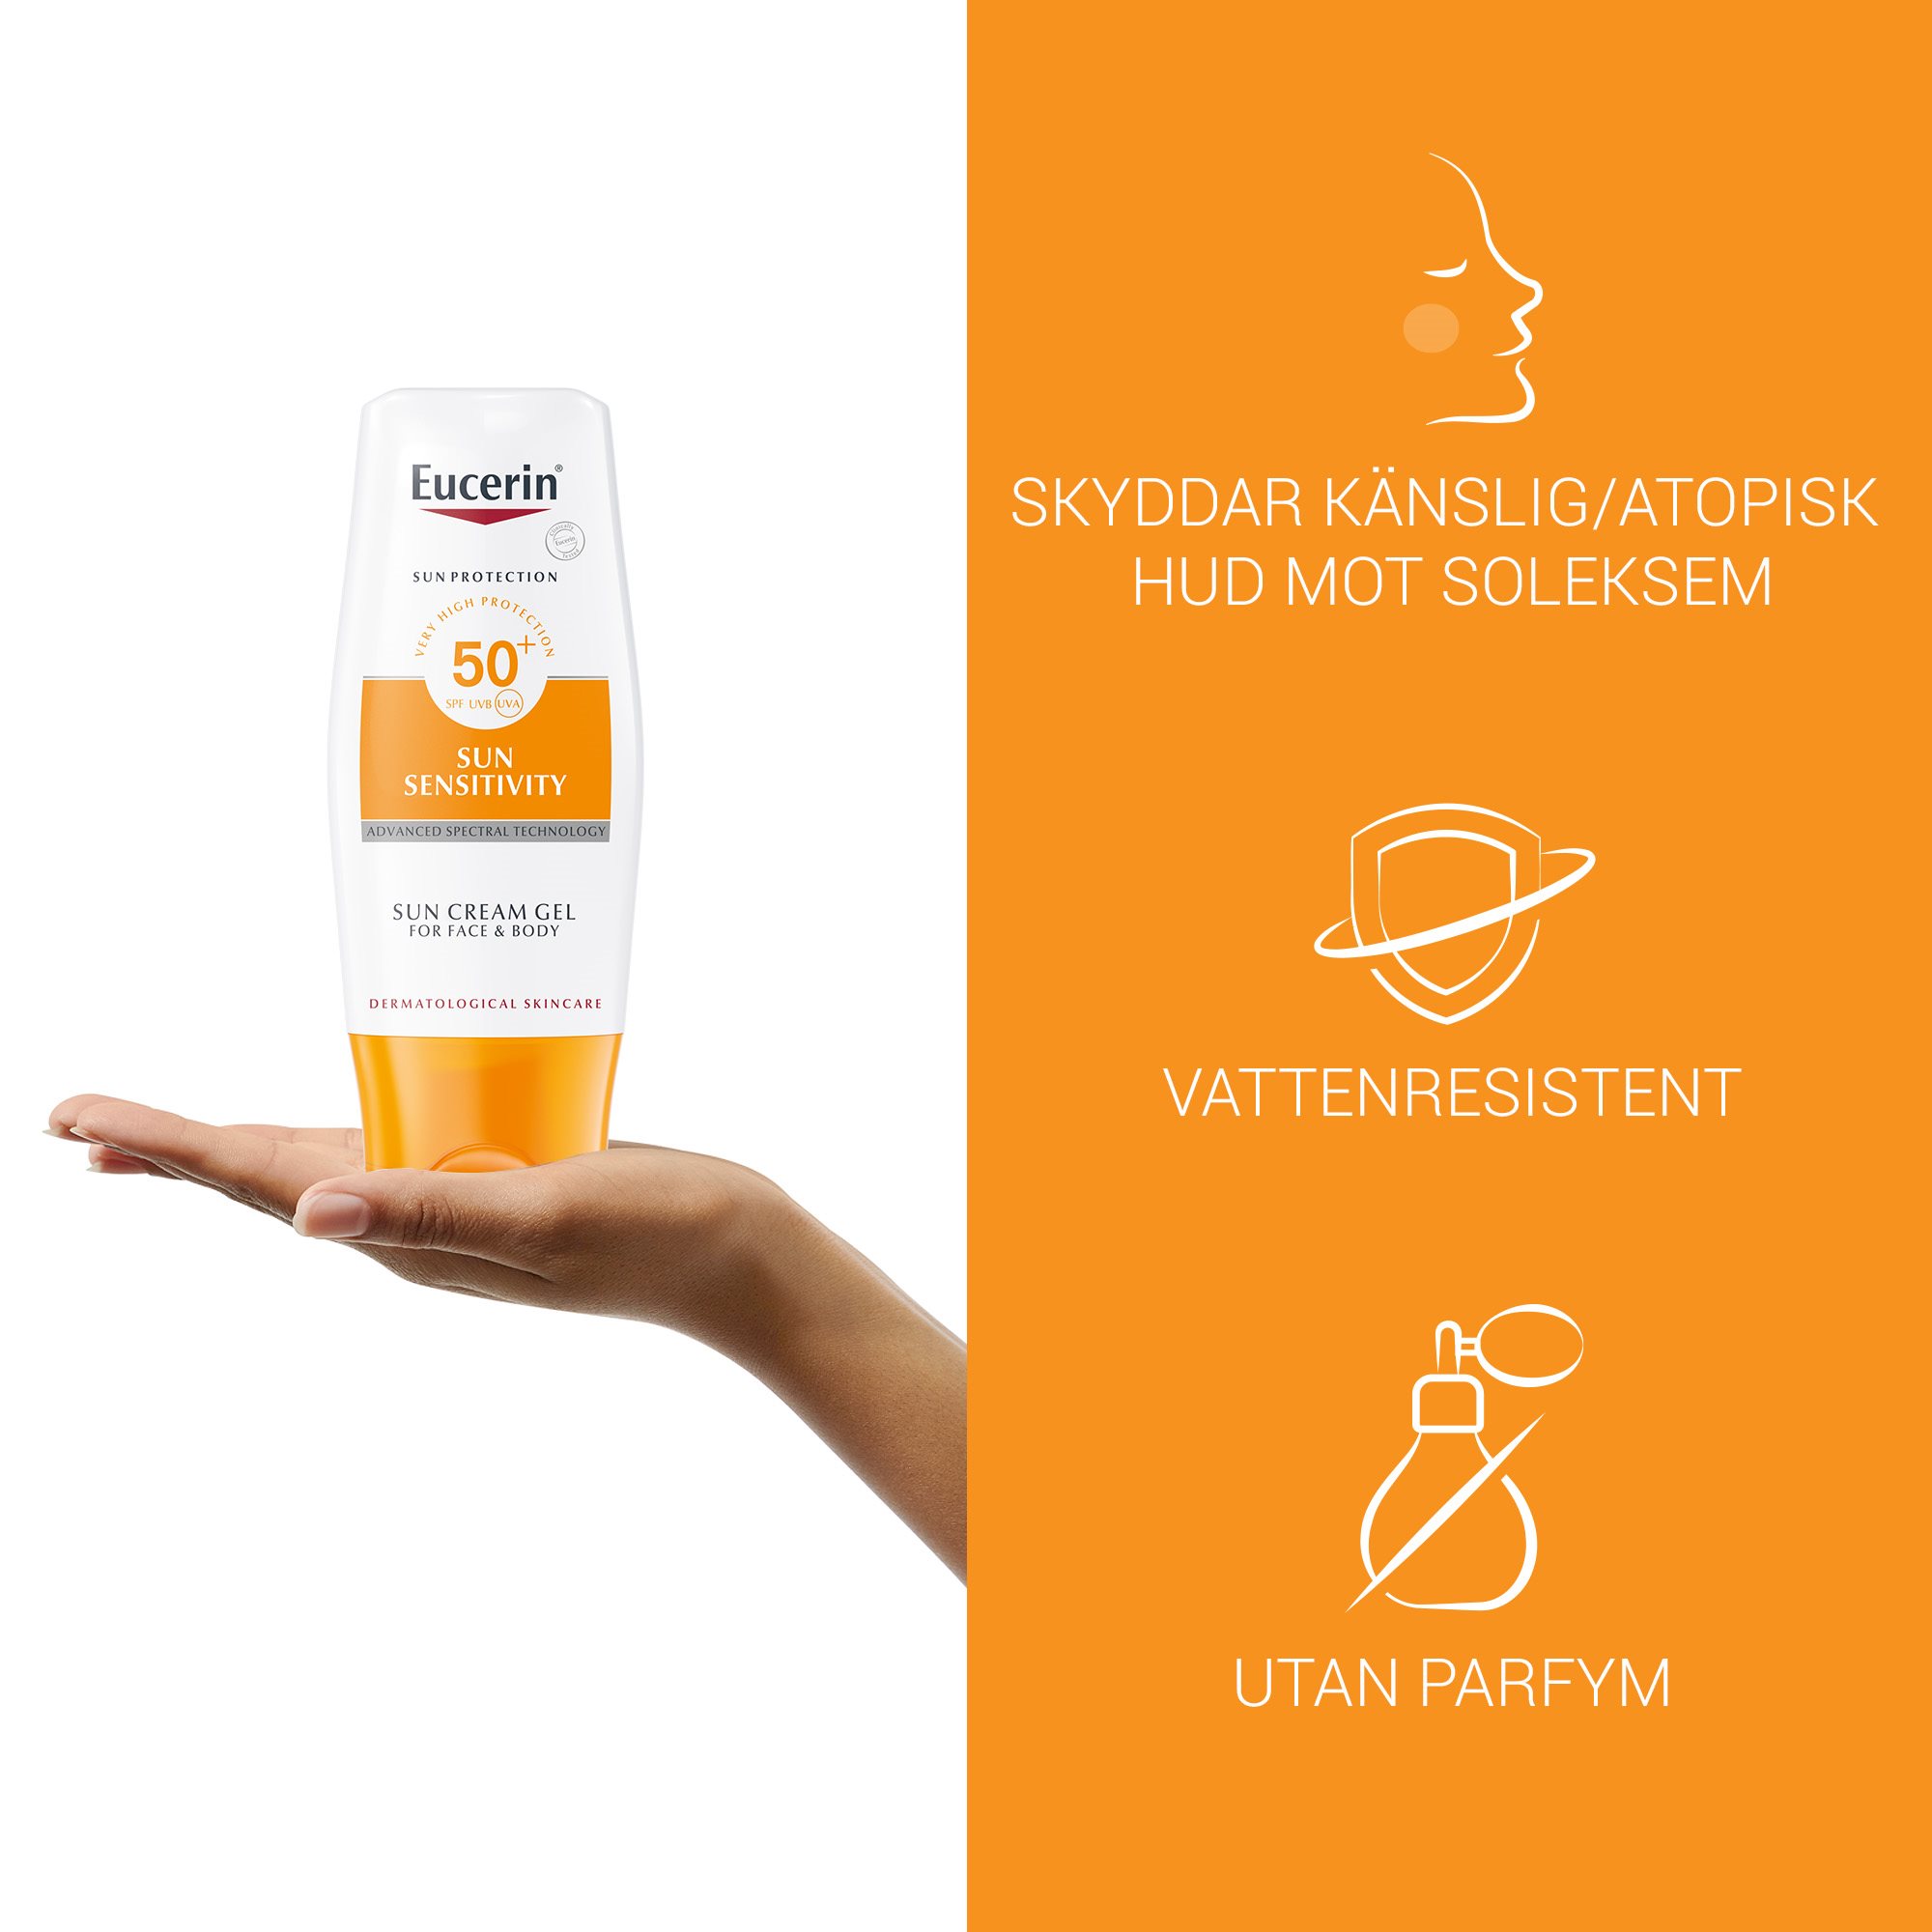 Bild med produktfördelar med Eucerin Sun Sensitivity SPF 50+, Skyddar känslig/atopisk hud mot soleksem, vattenresistent och utan parfym